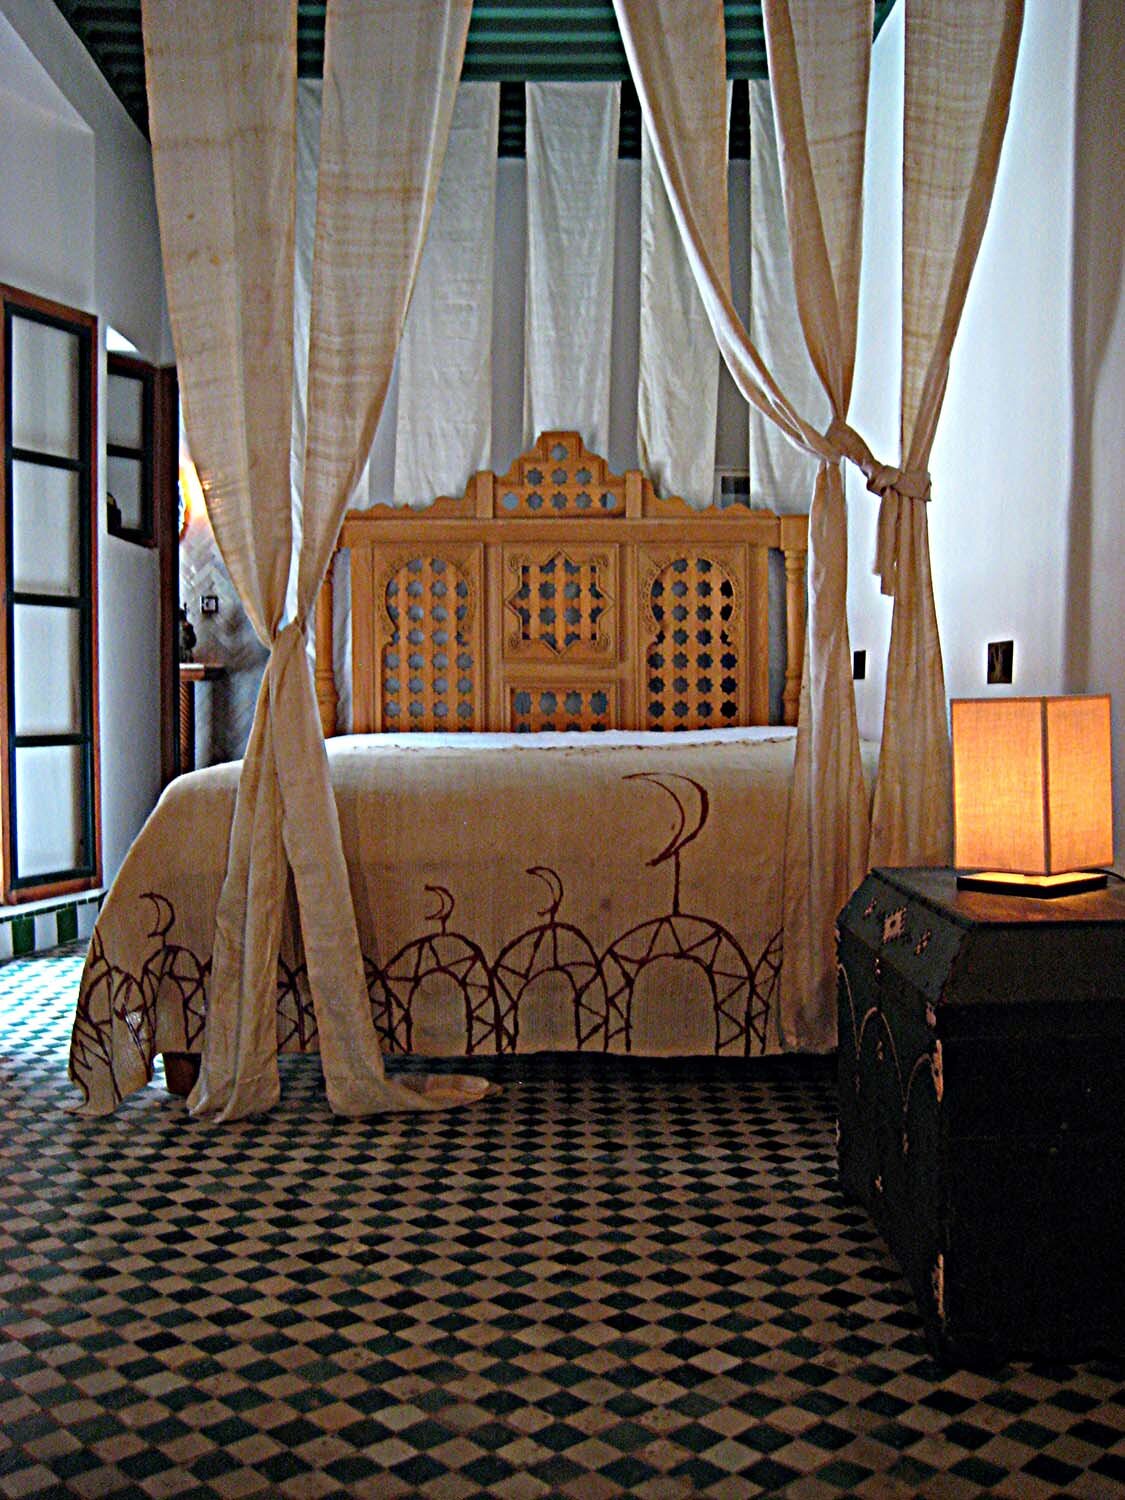  Romantic, maximalist interior design by Tamerlane's Daughters using museum-quality antique textiles 